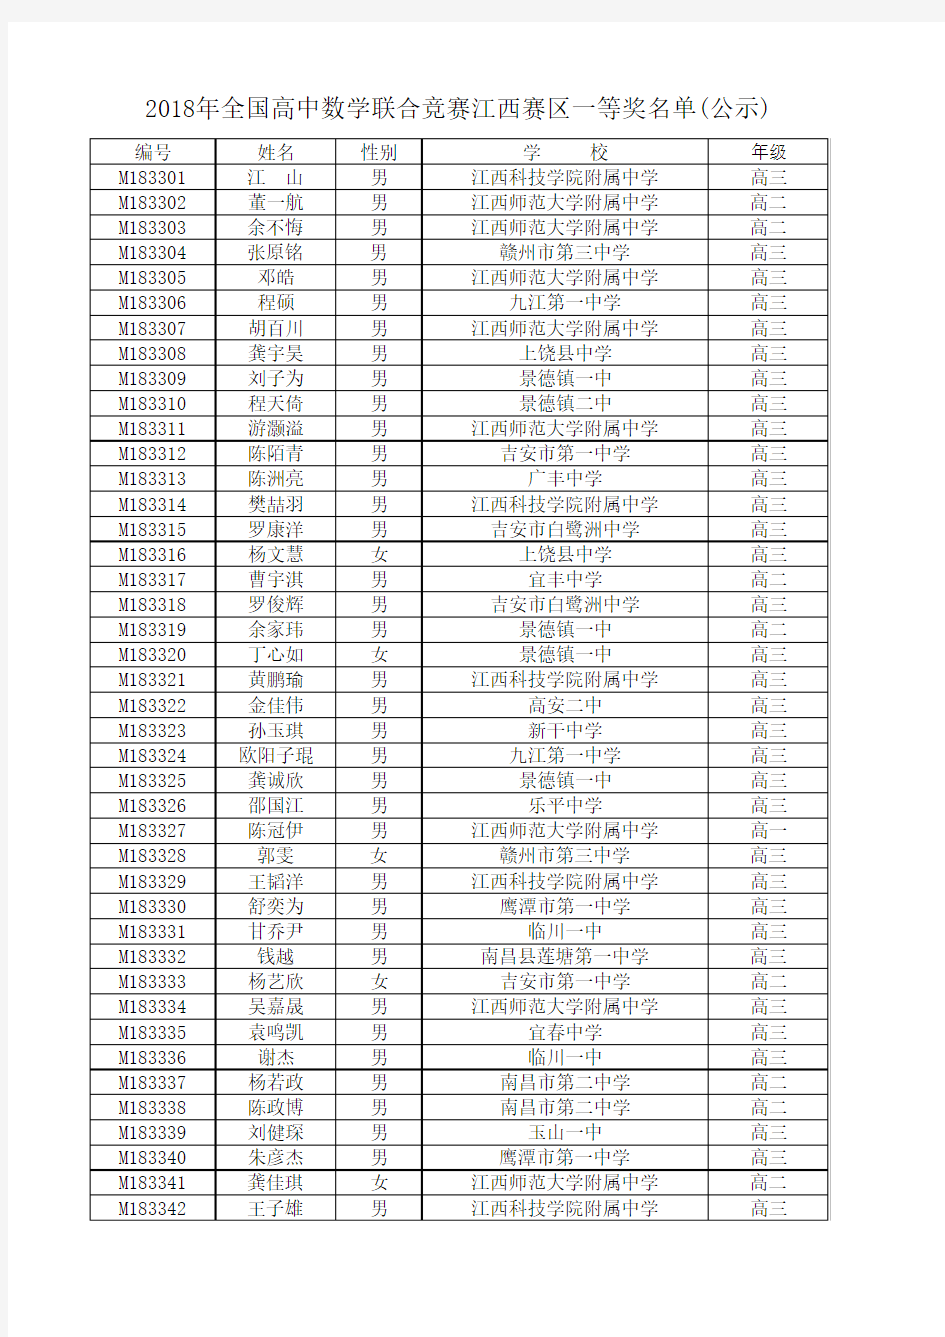 2018年全国高中数学联合竞赛江西赛区一等奖名单(公示)